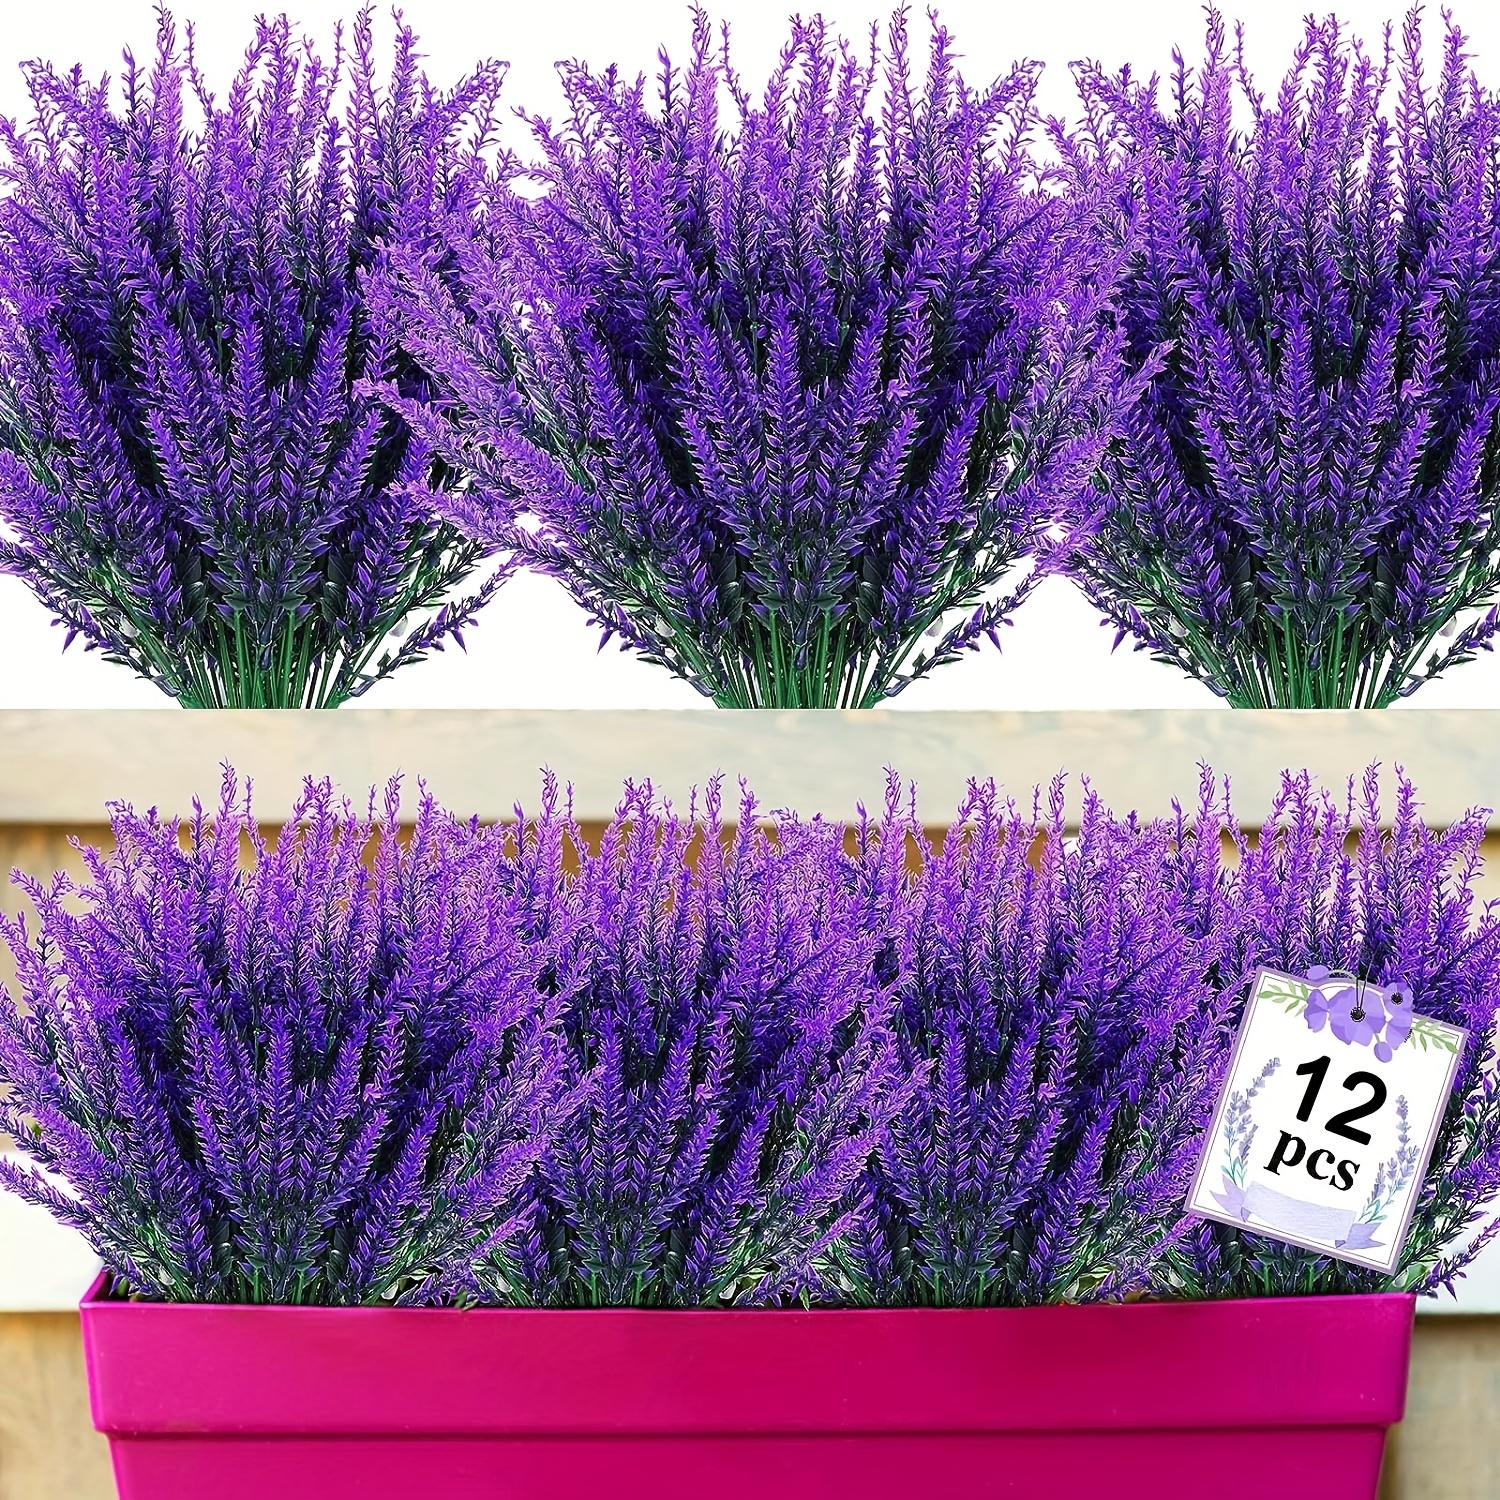 

12 Bundles De Fleurs De Lavande Artificielles Résistantes Aux UV Pour L'Extérieur, Fleurs Faux En Plastique Pour Décoration De Jardin, Porche Et Fenêtre